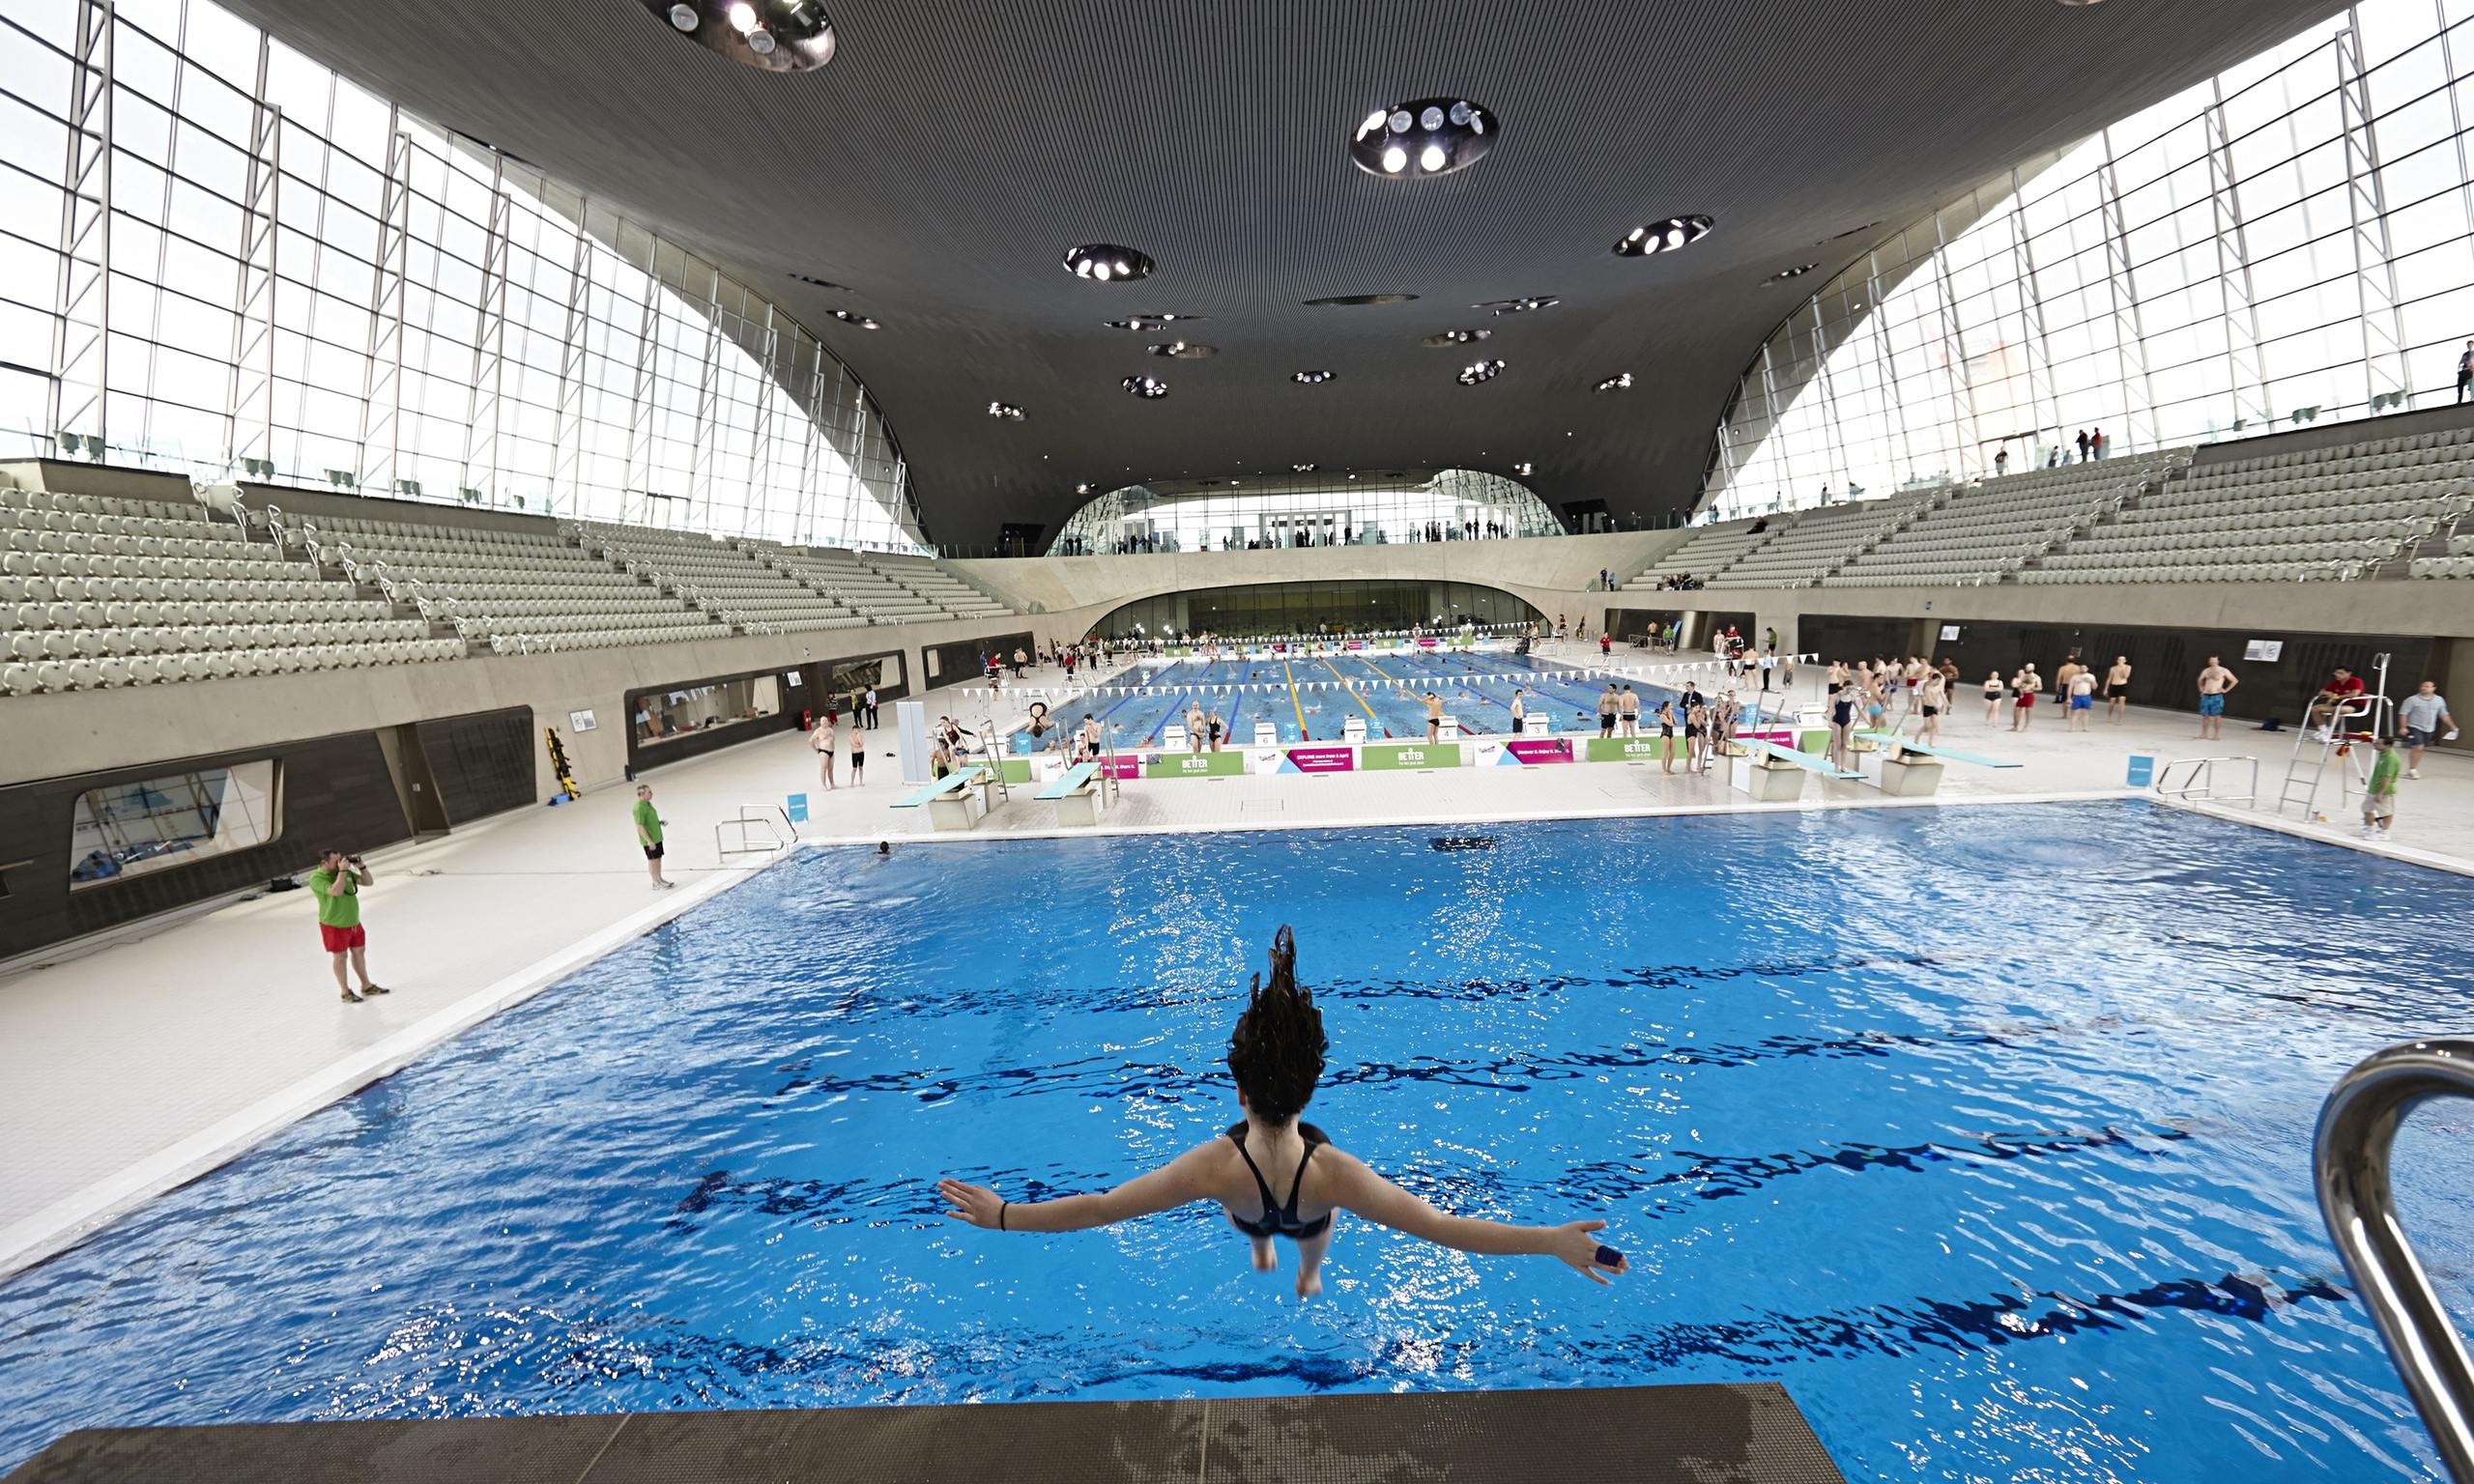 Первый бассейн в мире. Центр водных видов спорта в Лондоне. Олимпийский бассейн Лондон 2012. Акватик центр в Лондоне. Водный комплекс «Aquatic Center».